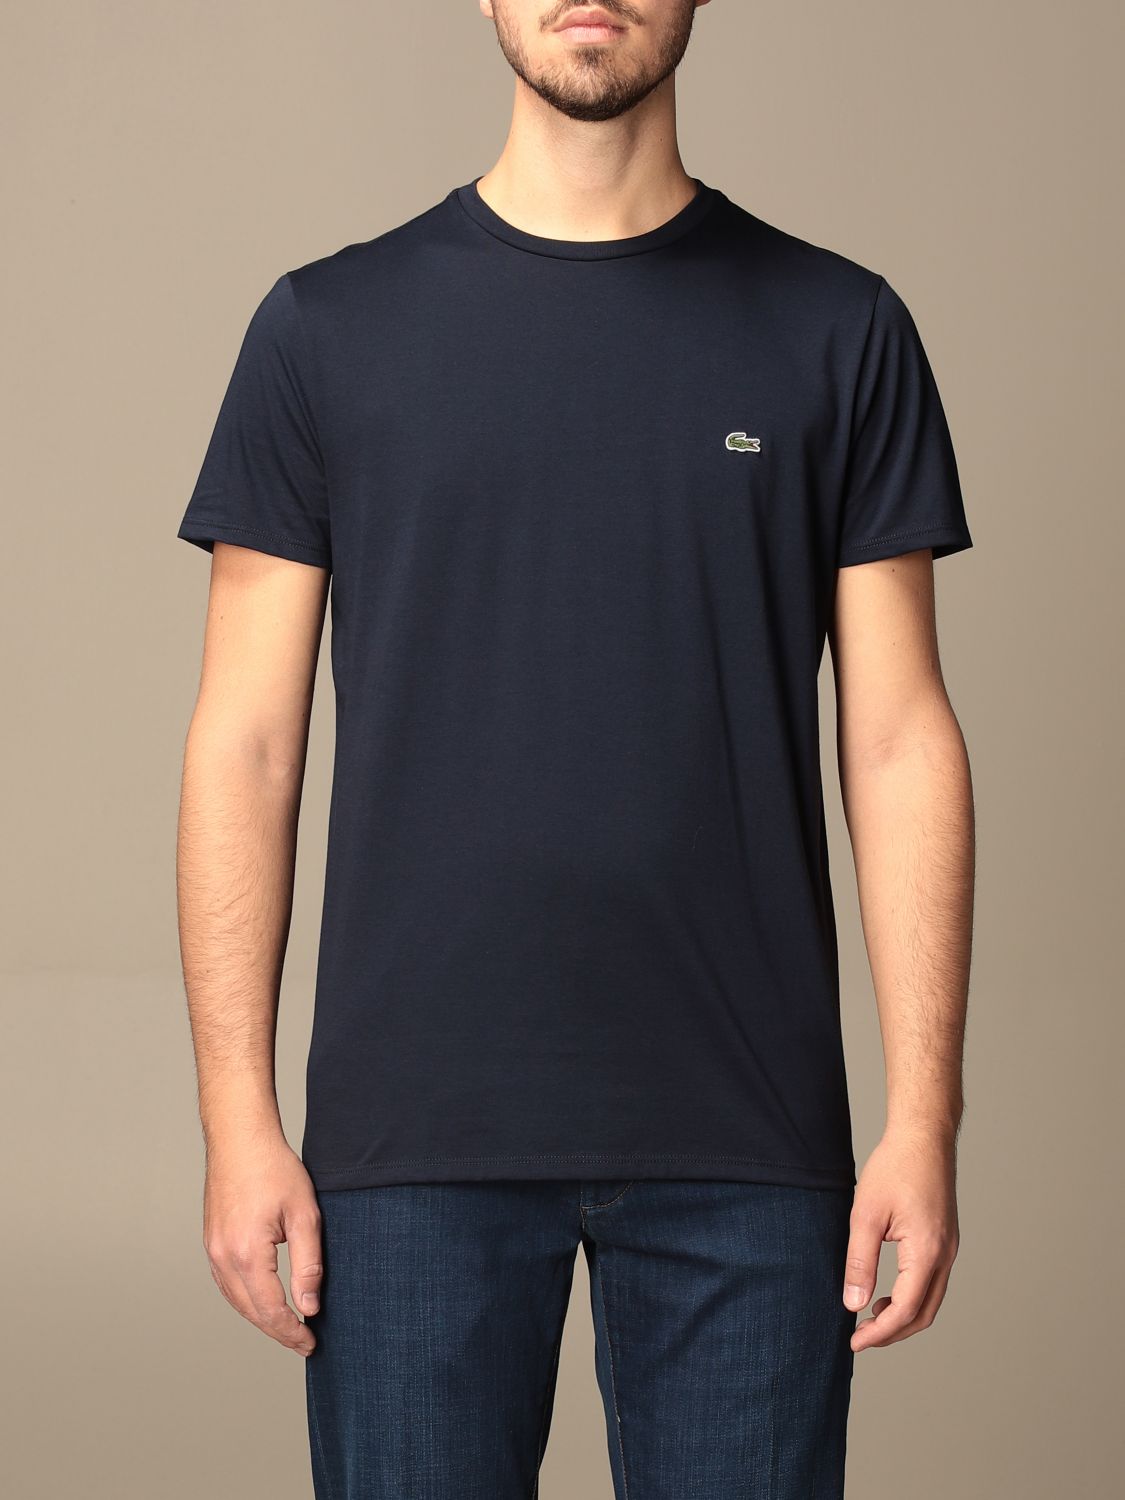 Lacoste Tシャツ メンズ ネイビー Giglio Comオンラインのlacoste Tシャツ Th6709